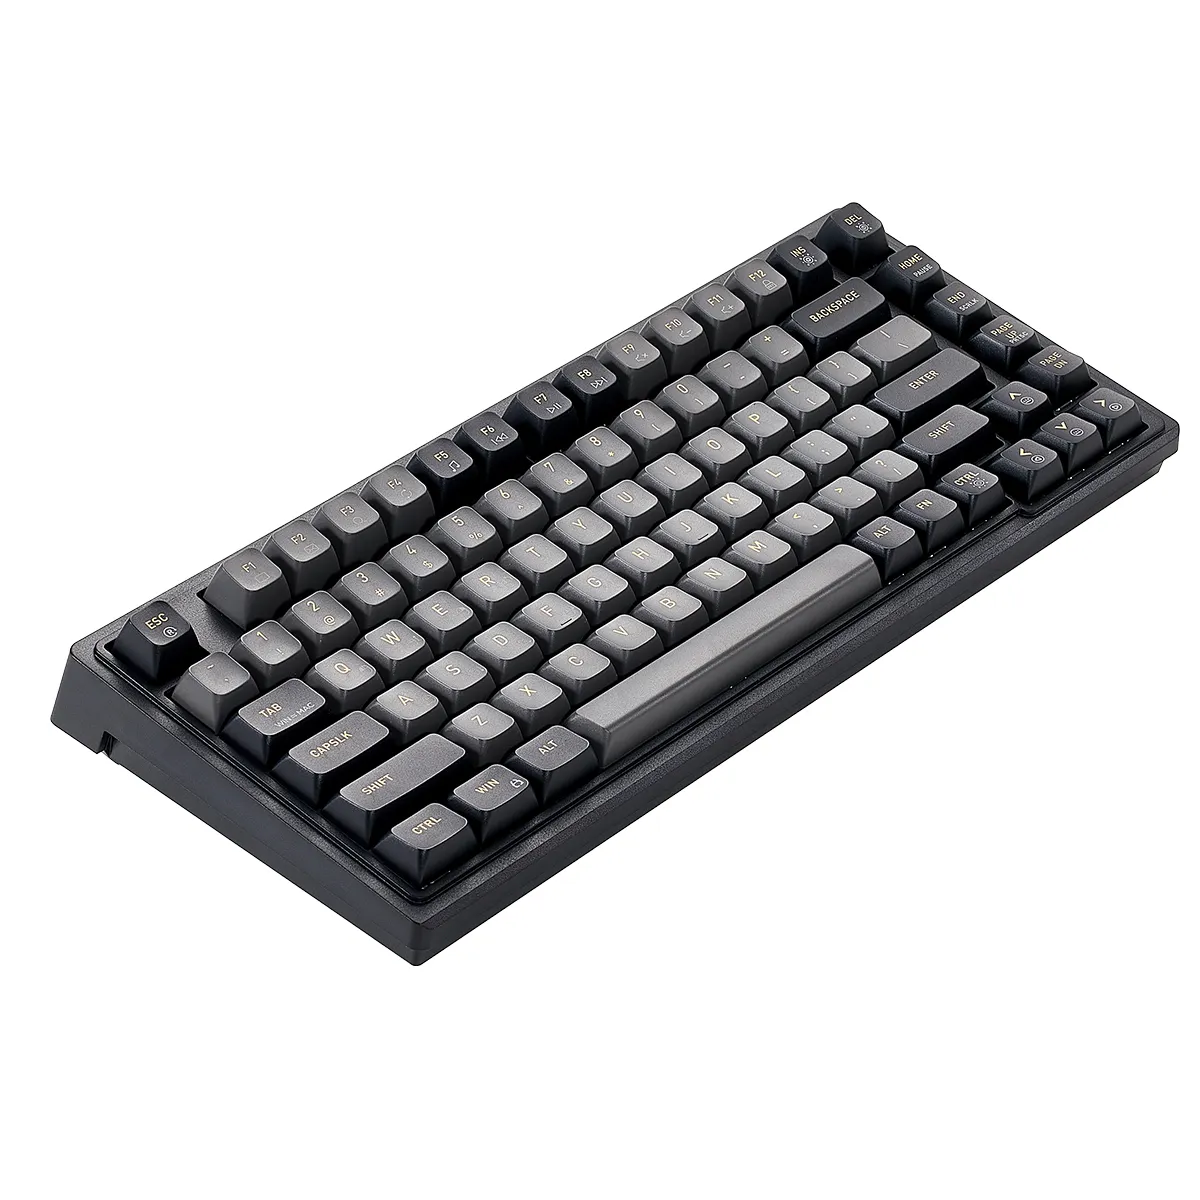 O usb personalizado do teclado mecânico do jogo prendeu o rgb 60 por cento 75% chaves teclado macro ergonômico para o computador do PC